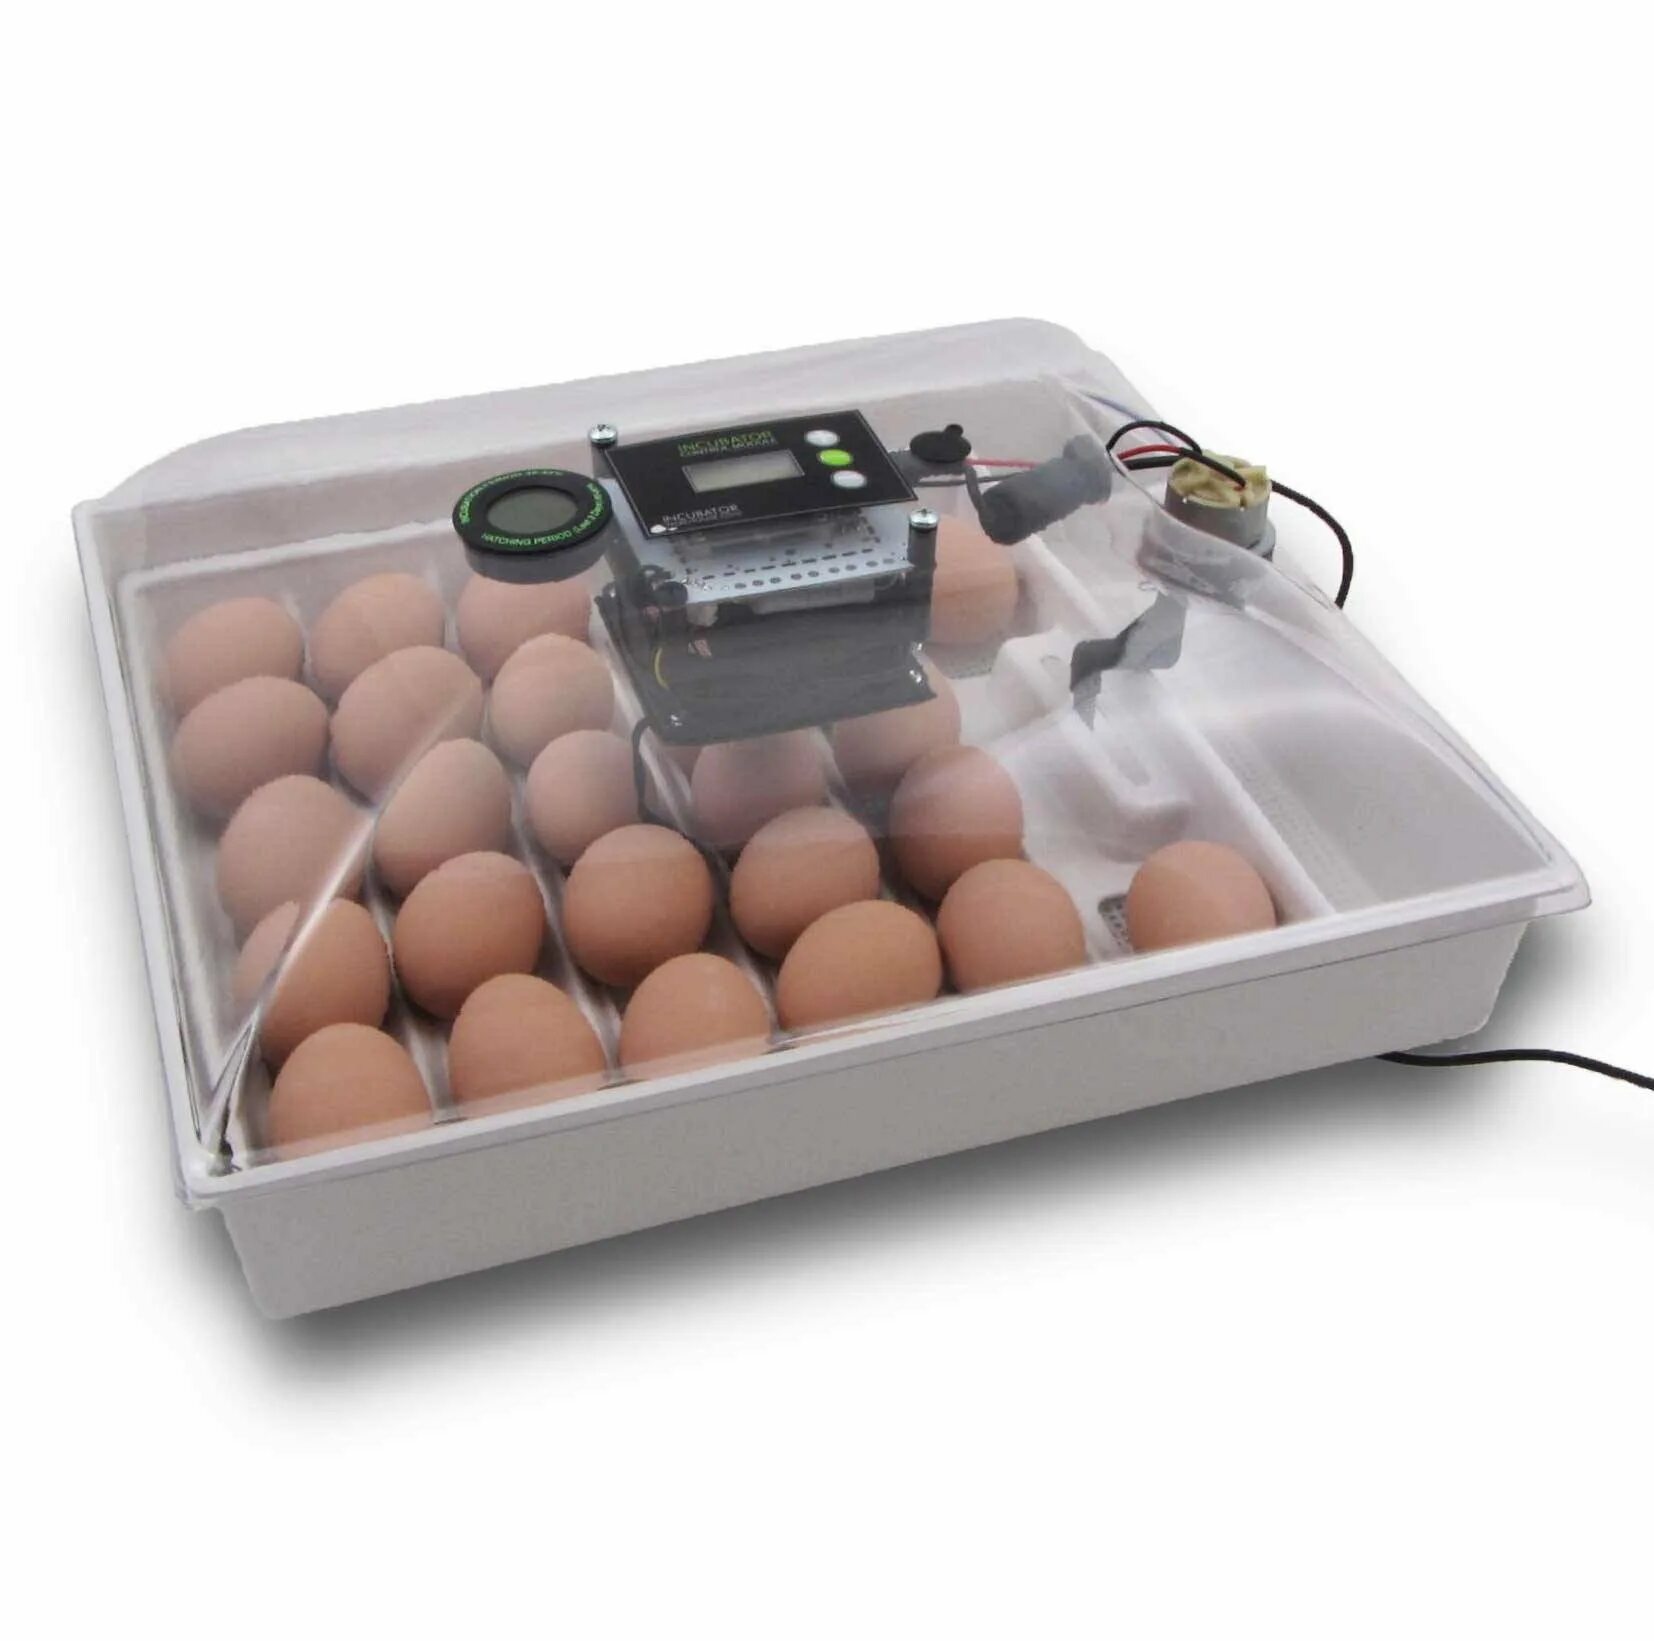 Инкубатор для яиц автоматический домашний. Инкубатор Egg incubator. Инкубатор FLORAFLEX incubator Kit. Инкубатор SITITEK 36. Кв400 binger инкубатор для яиц.